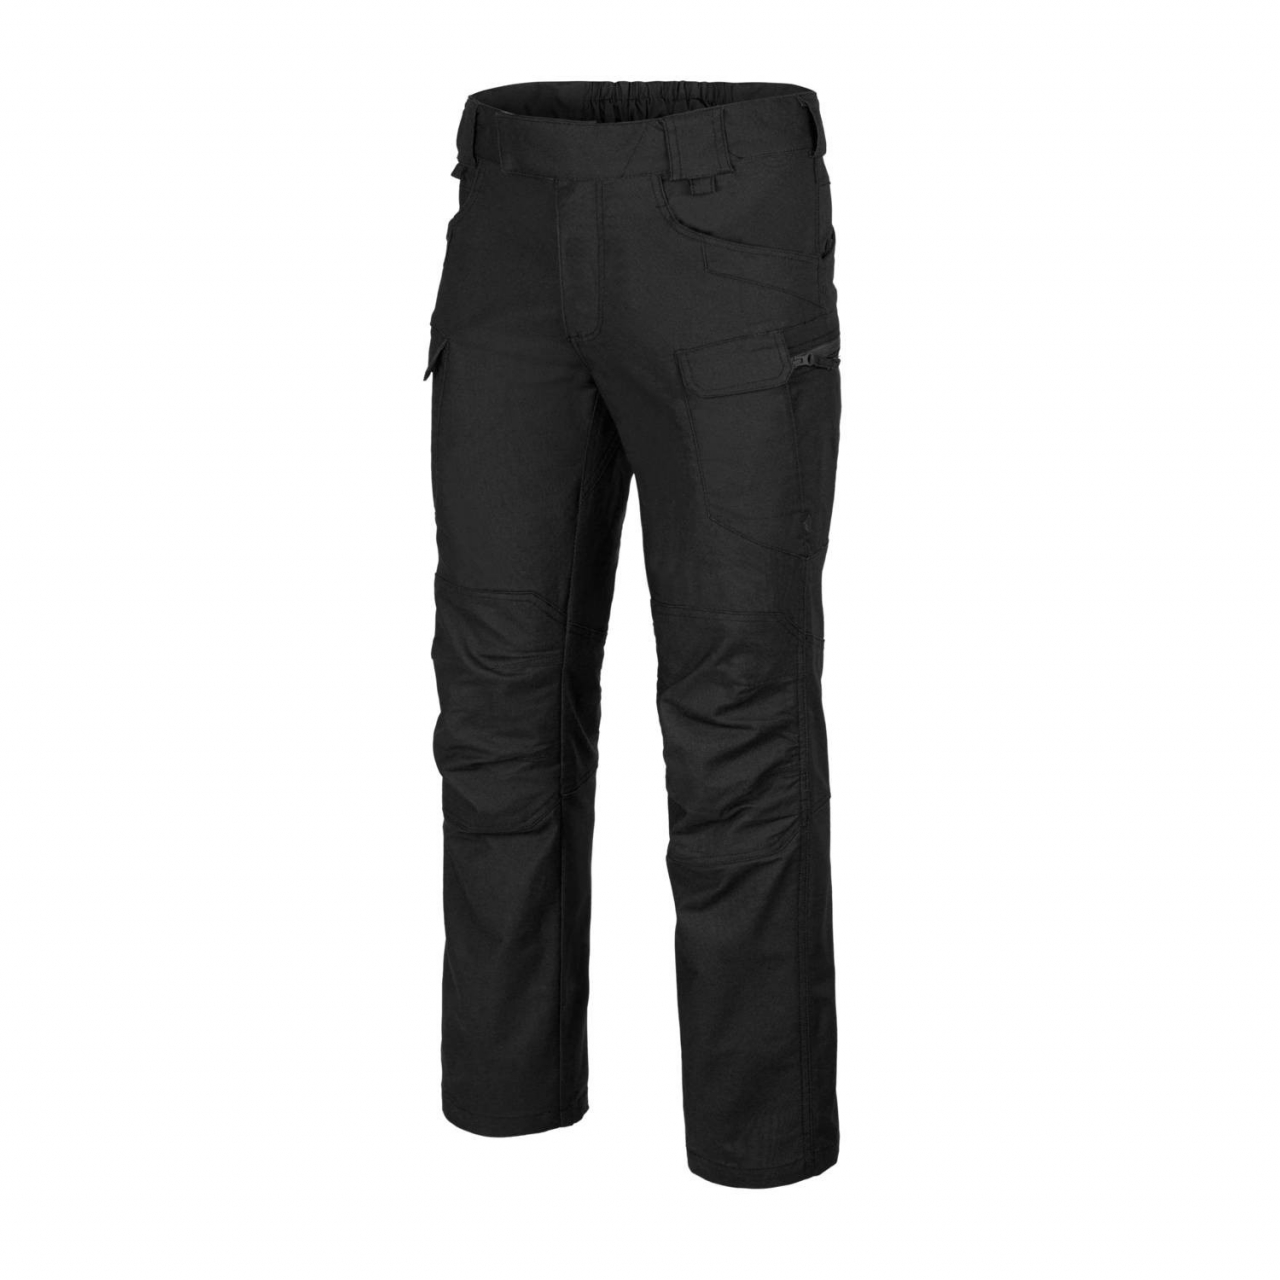 Kalhoty Helikon UTP PolyCotton - černé, S Long